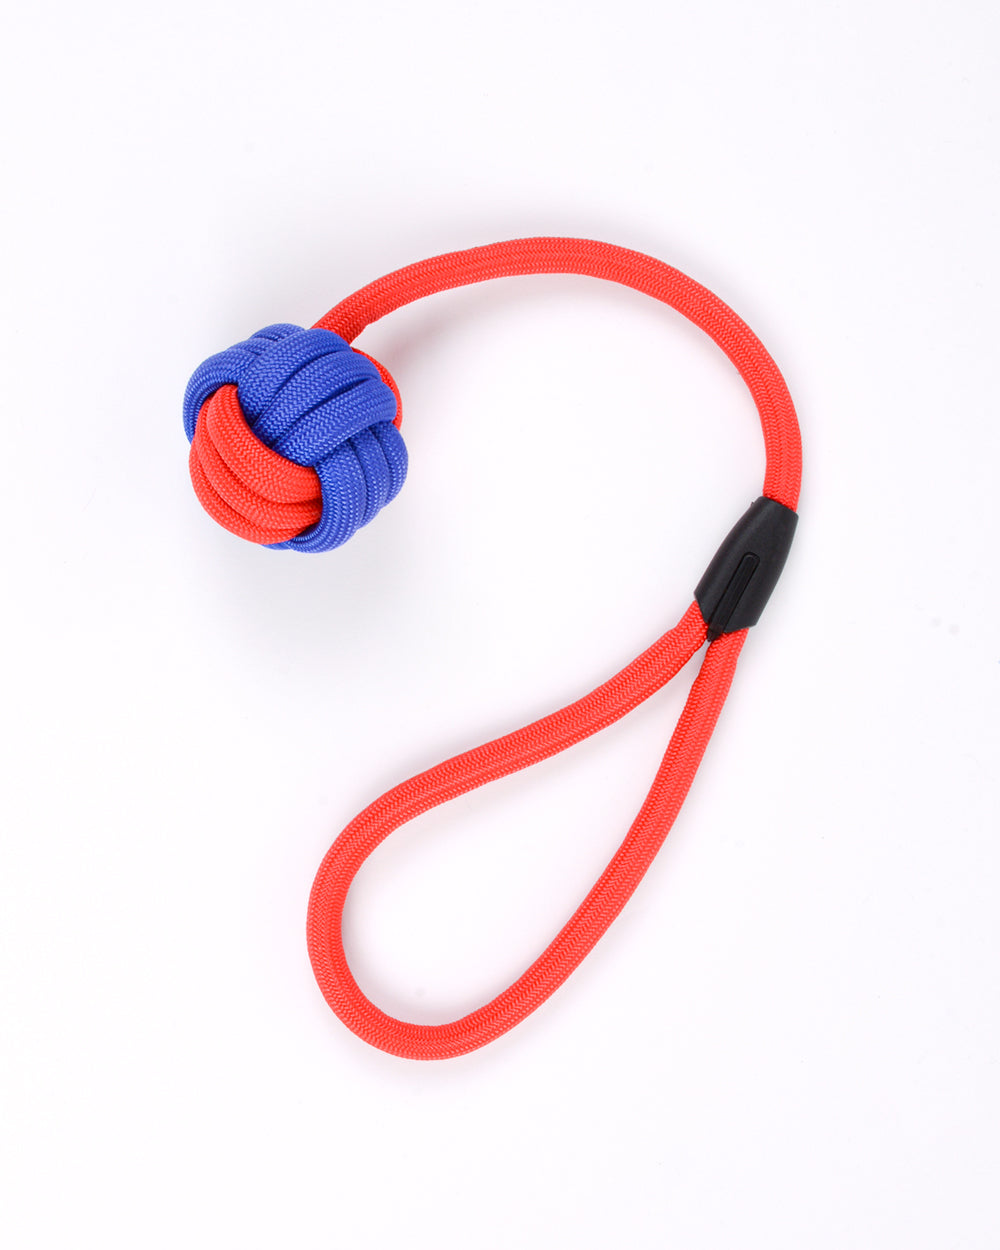 尼龍繩和球拖輪玩具帶環 - 紅藍